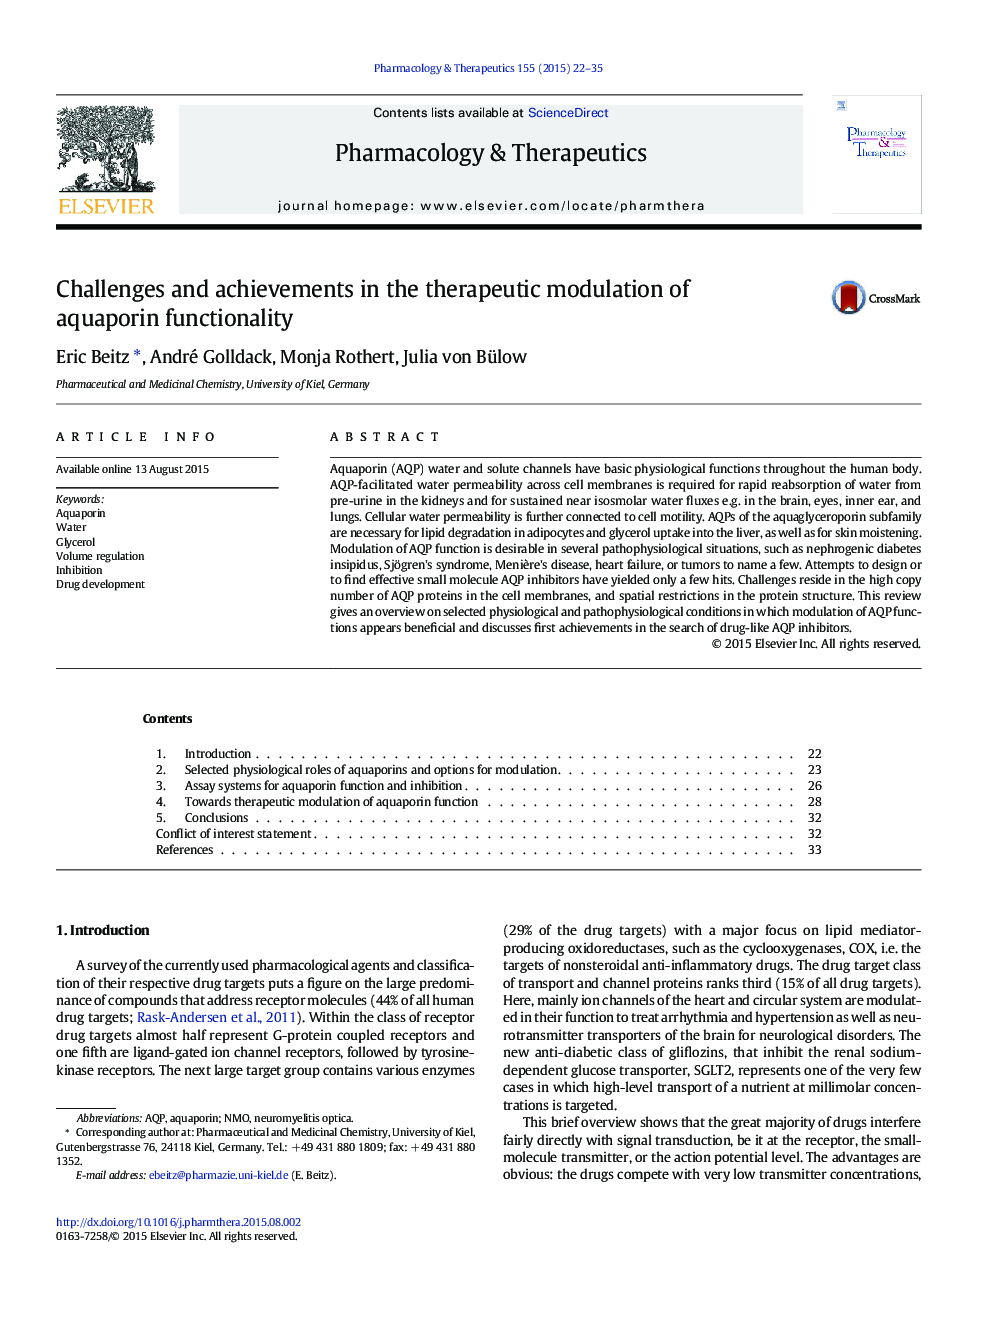 چالش ها و دستاوردهای در مدولاسیون درمانی از قابلیت های آکوپورین 